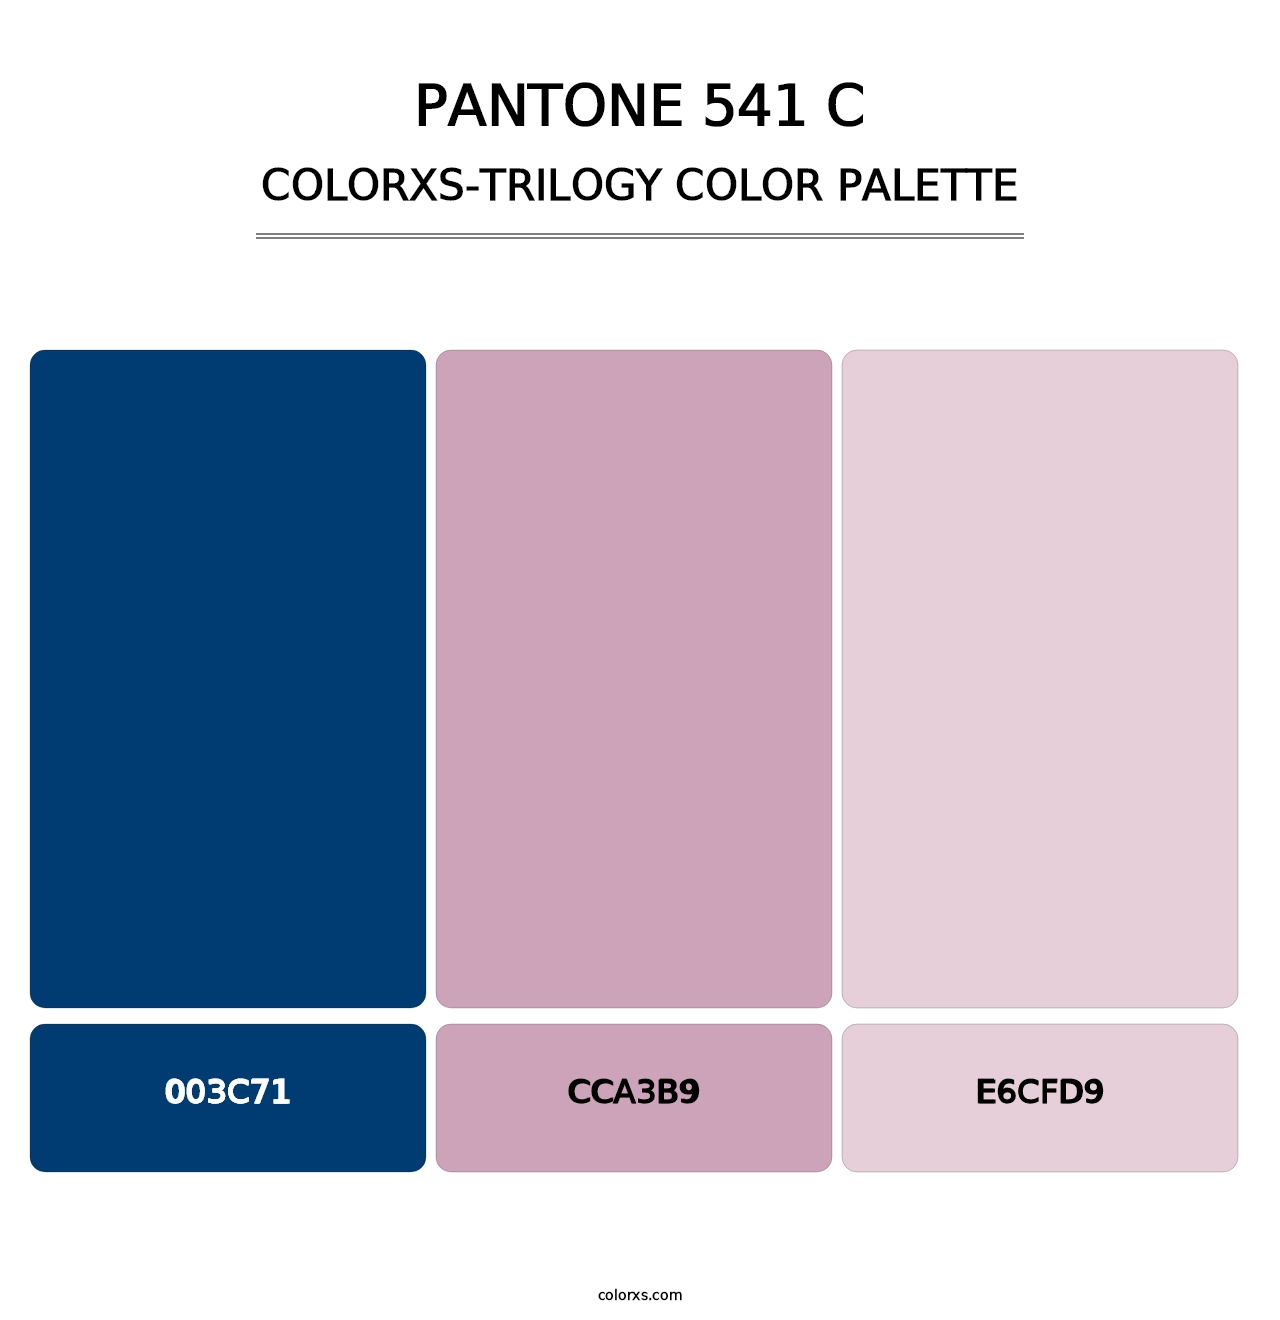 PANTONE 541 C - Colorxs Trilogy Palette